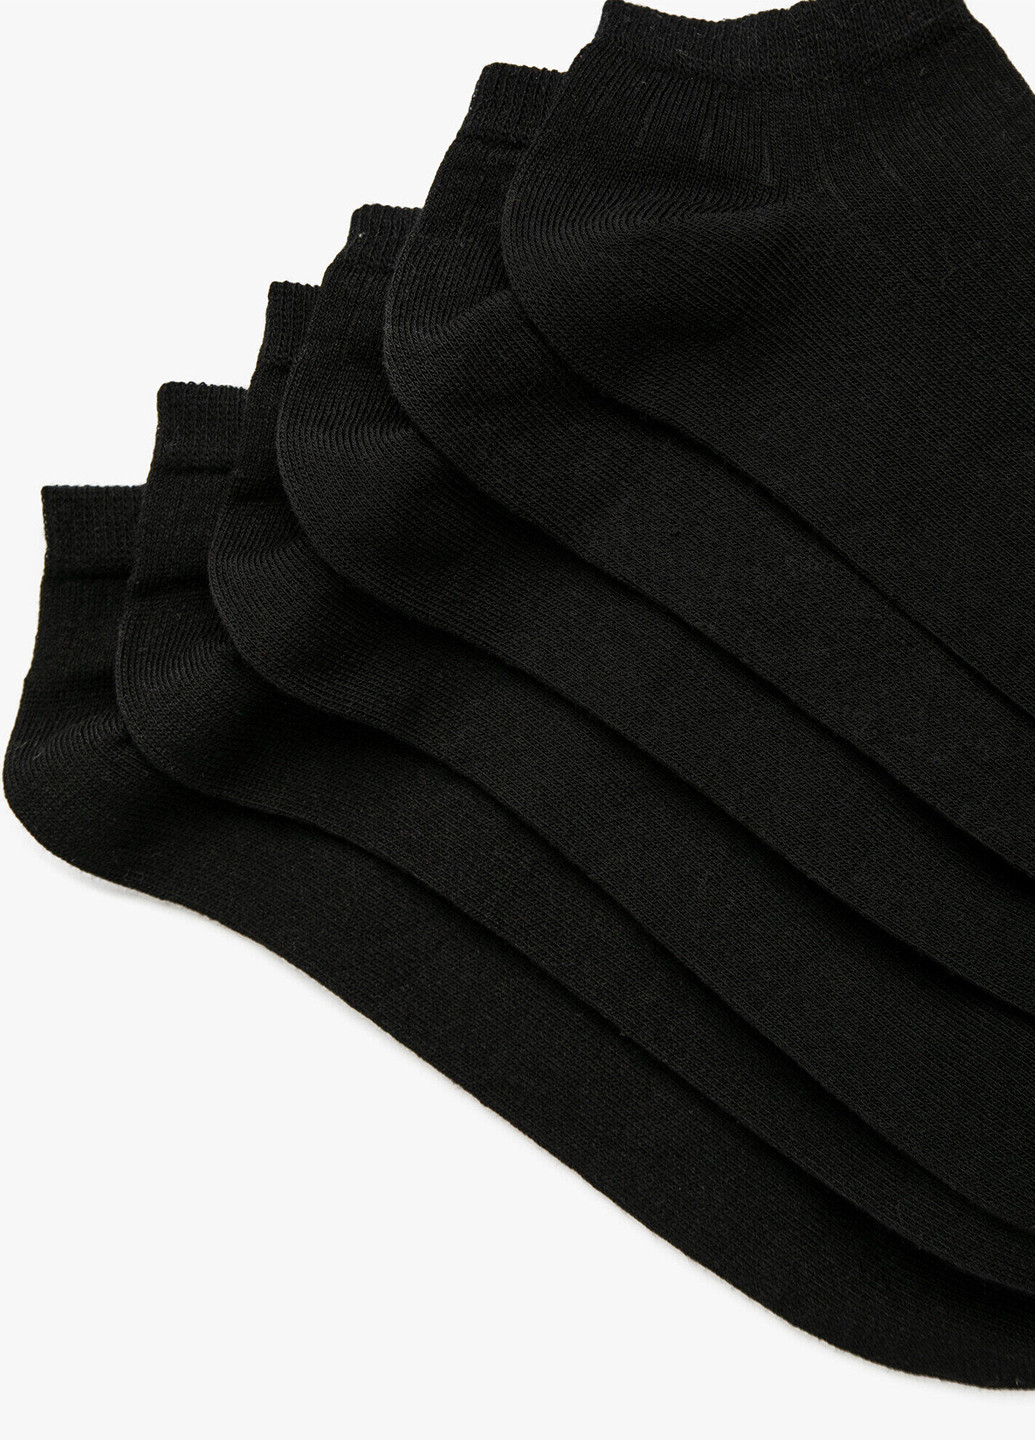 Носки (3 пары) KOTON однотонные чёрные повседневные